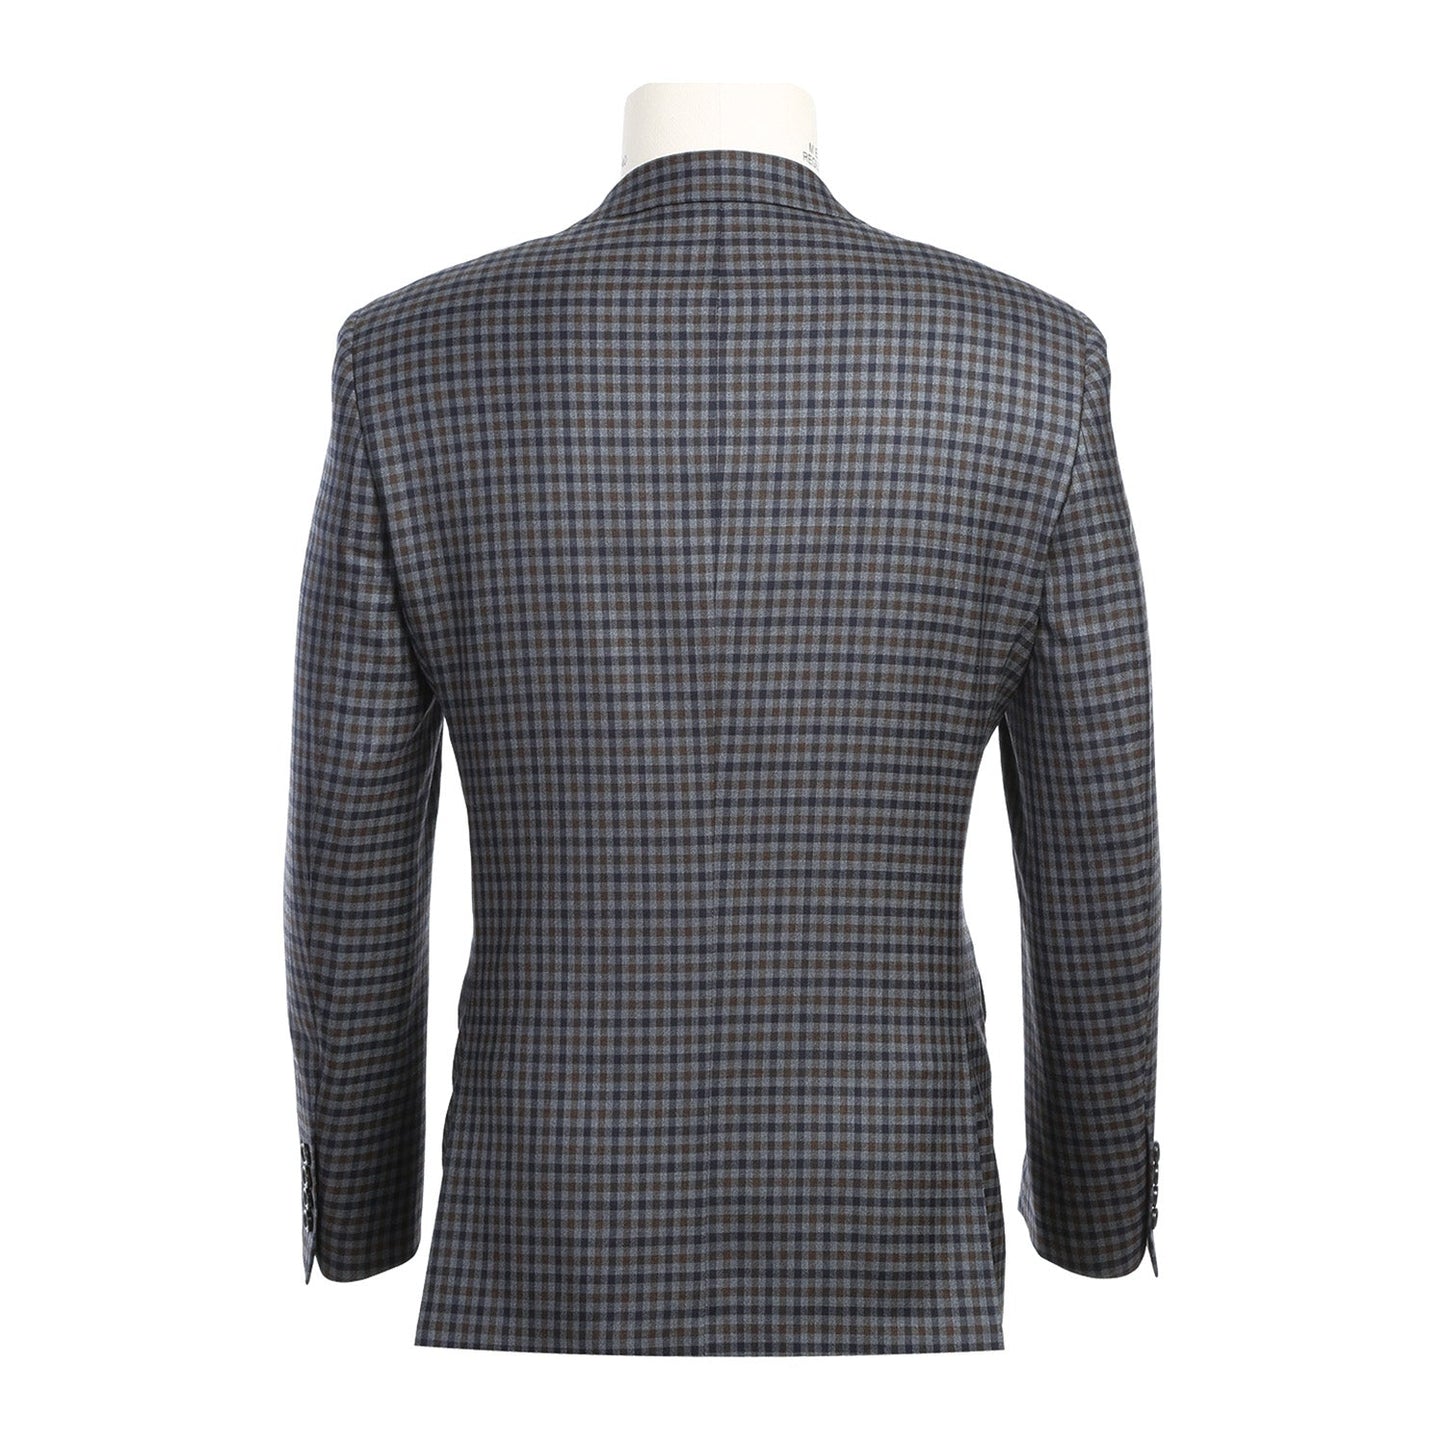 563-10 Men's Slim Fit Wool Grey/Blue/Brown Checked Sport Coat